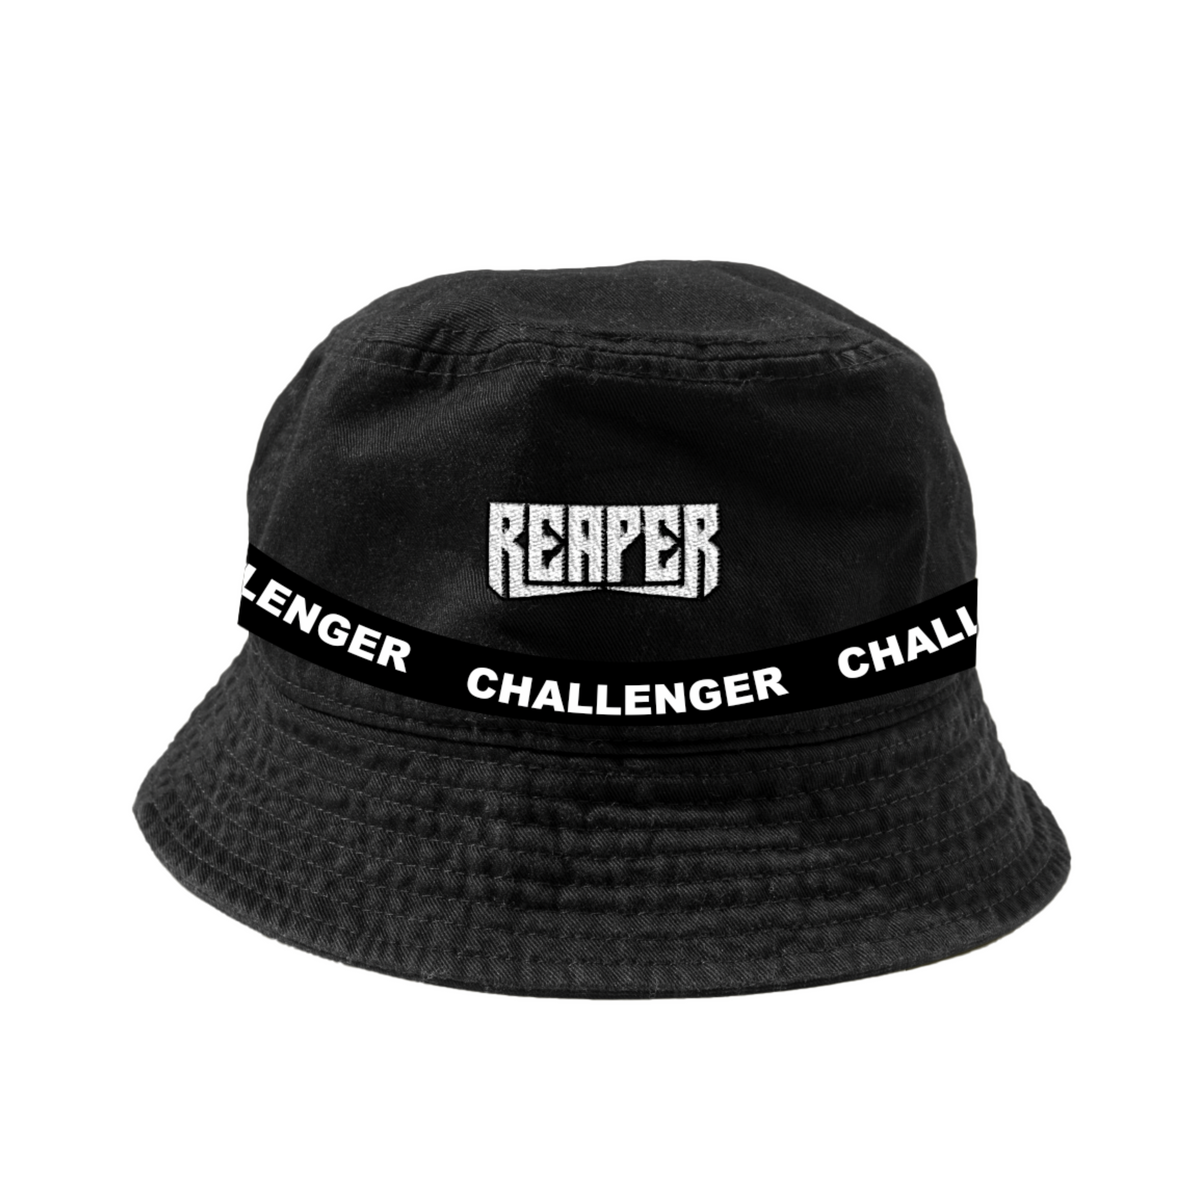 REAPER CHALLENGER BUCKET HAT